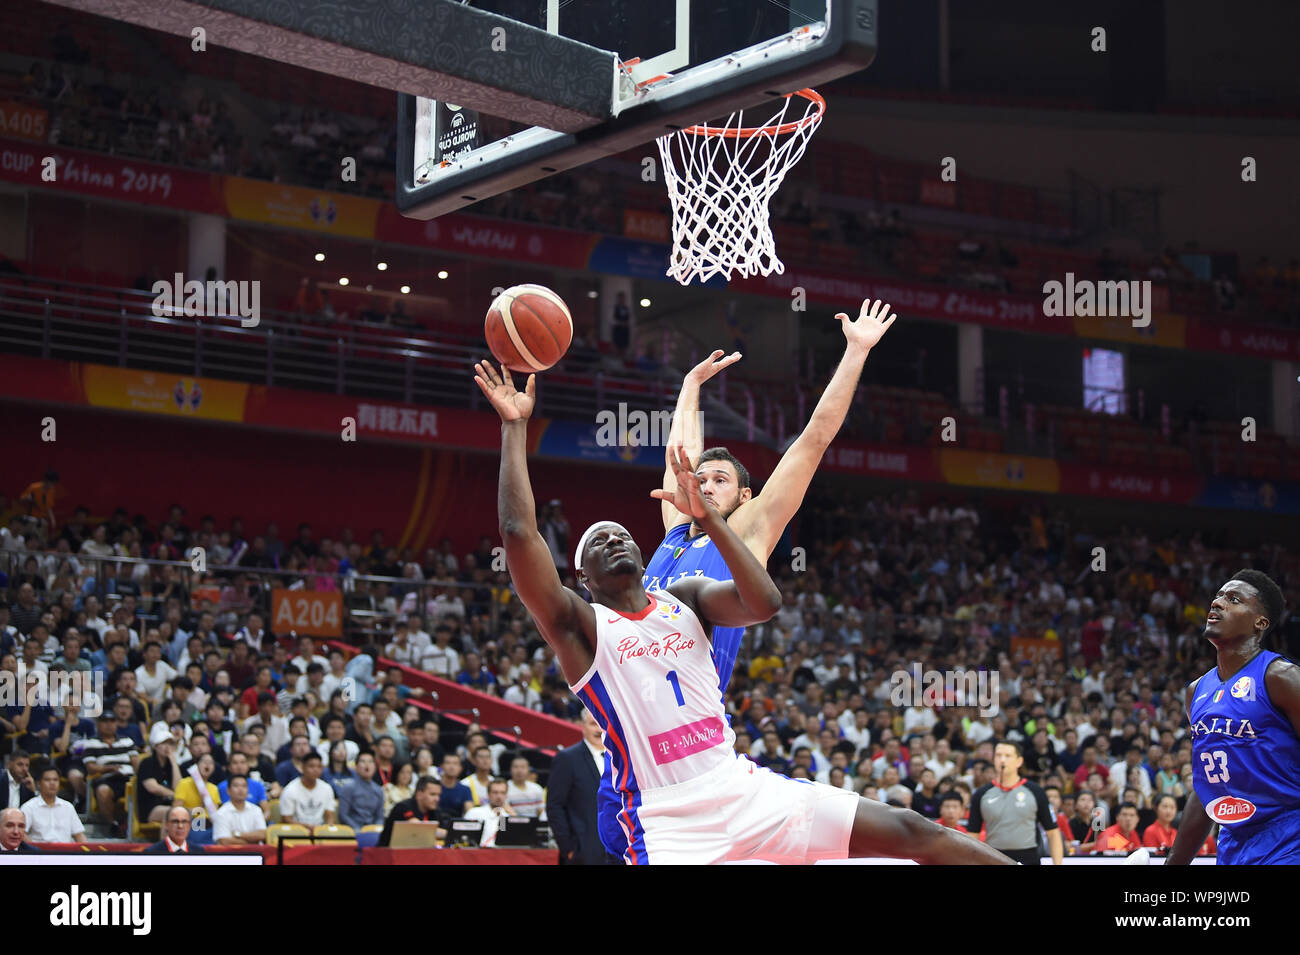 Wuhan (Chine), l'Italie, 08 Sep 2019, RAMON CLEMENTE pendant la Coupe du Monde de Basket-ball 2019 - Porto Rico Vs Italie - Italie - l'Équipe nationale de basket-ball Crédit : LPS/Massimo Matta/Alamy Live News Banque D'Images